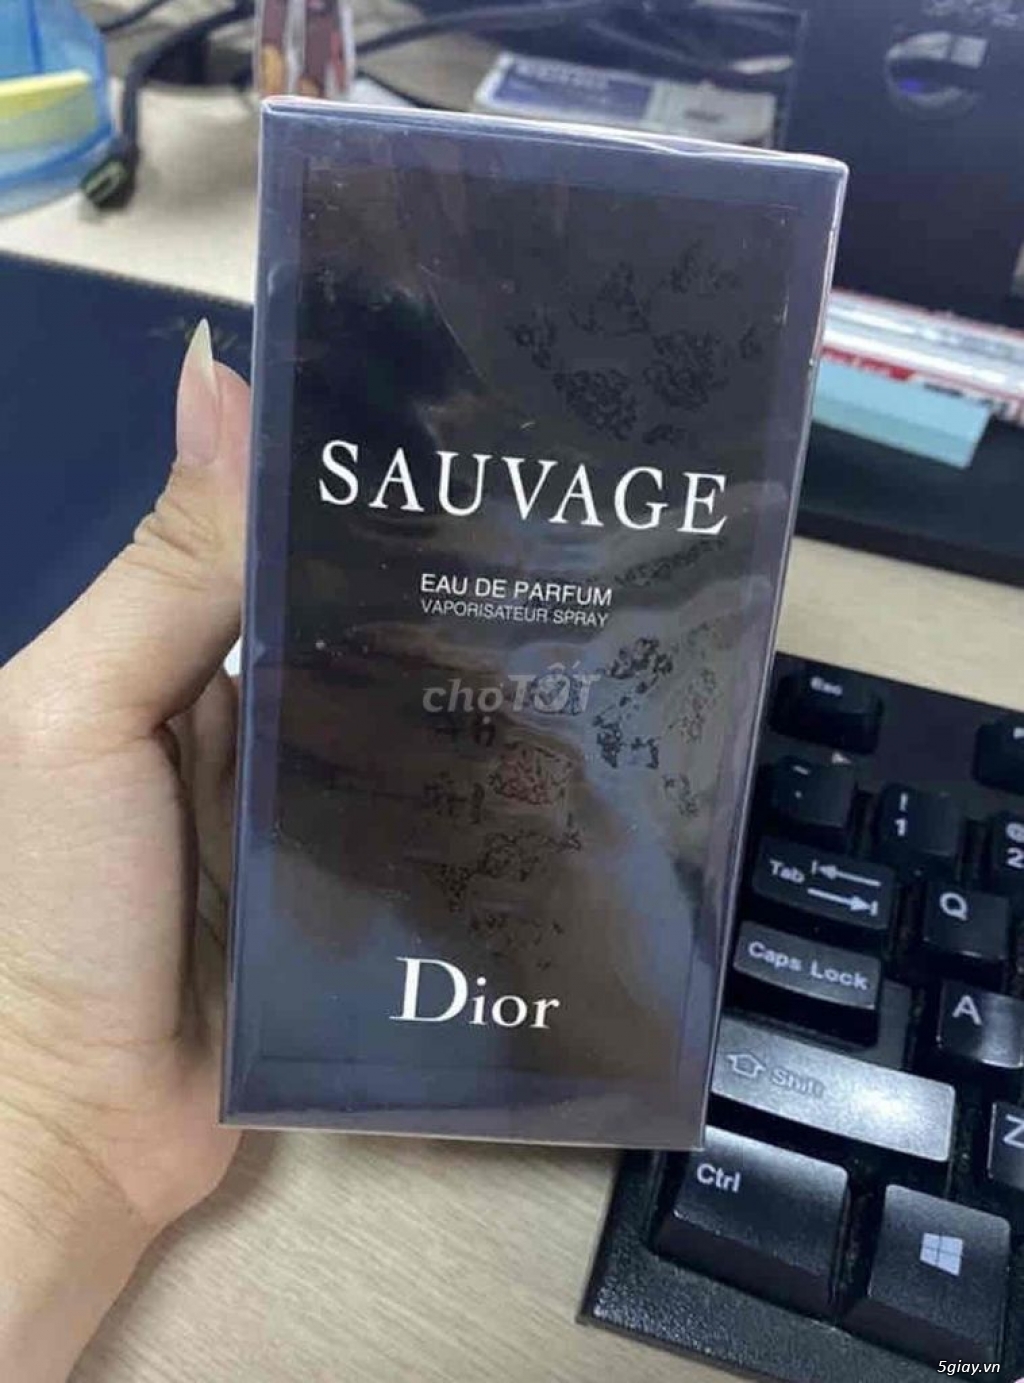 Nước hoa Dior Sauvage chính hãng cao cấp nhập khẩu Giá tốt